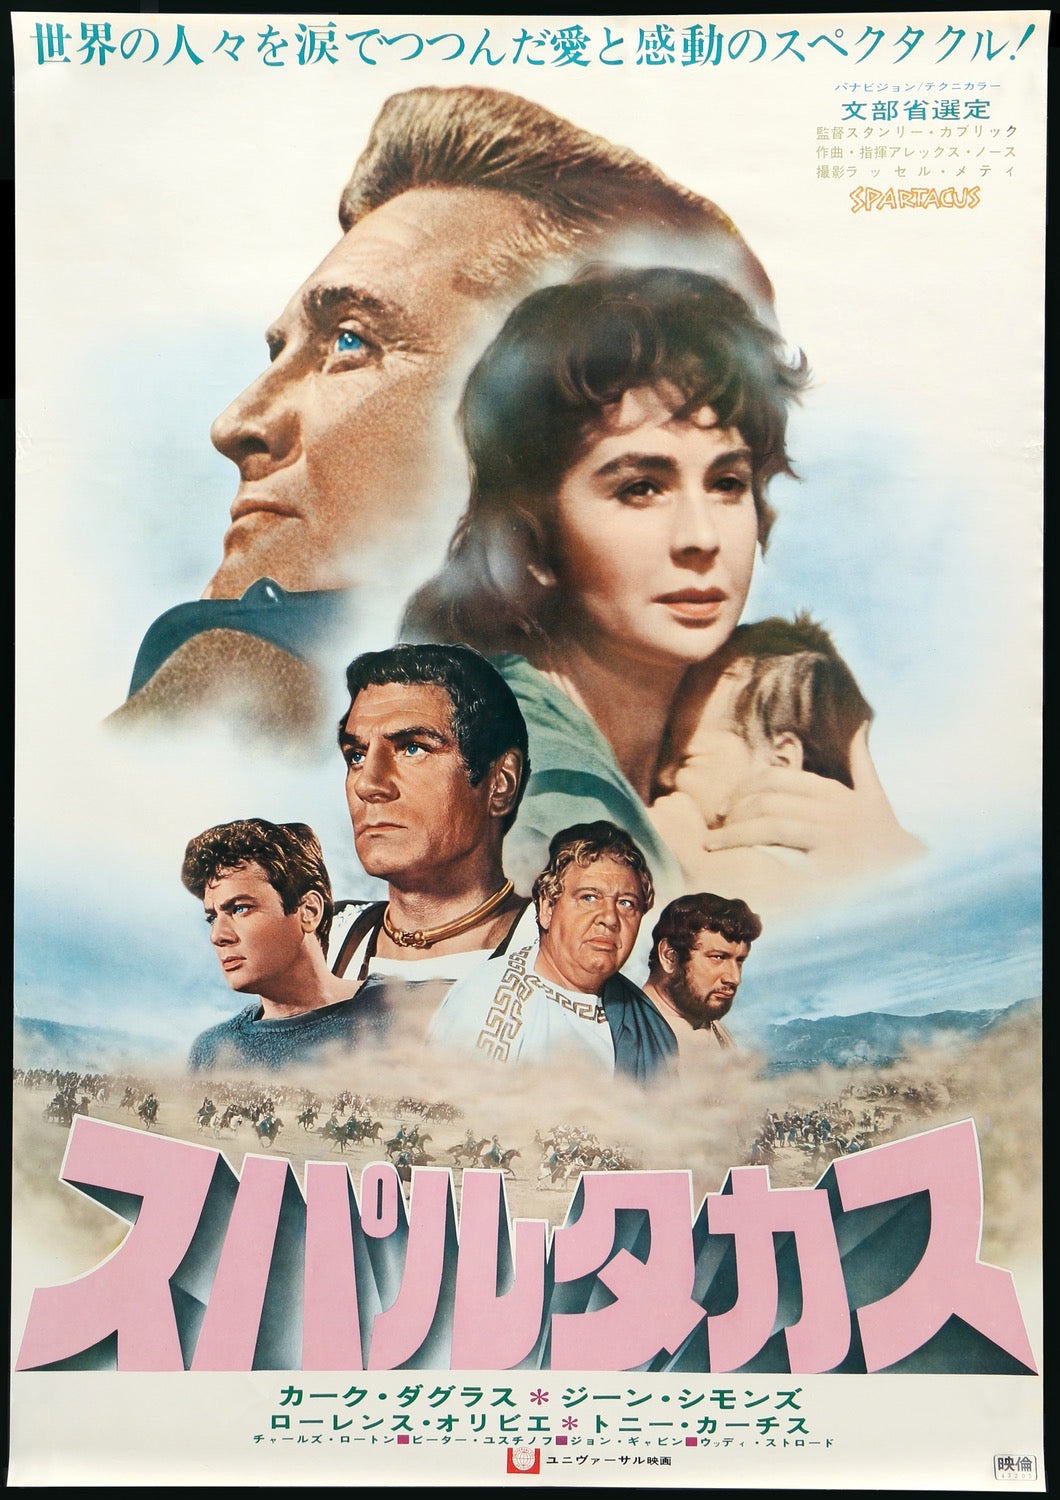 Spartacus (1960) original movie poster for sale at Original Film Art